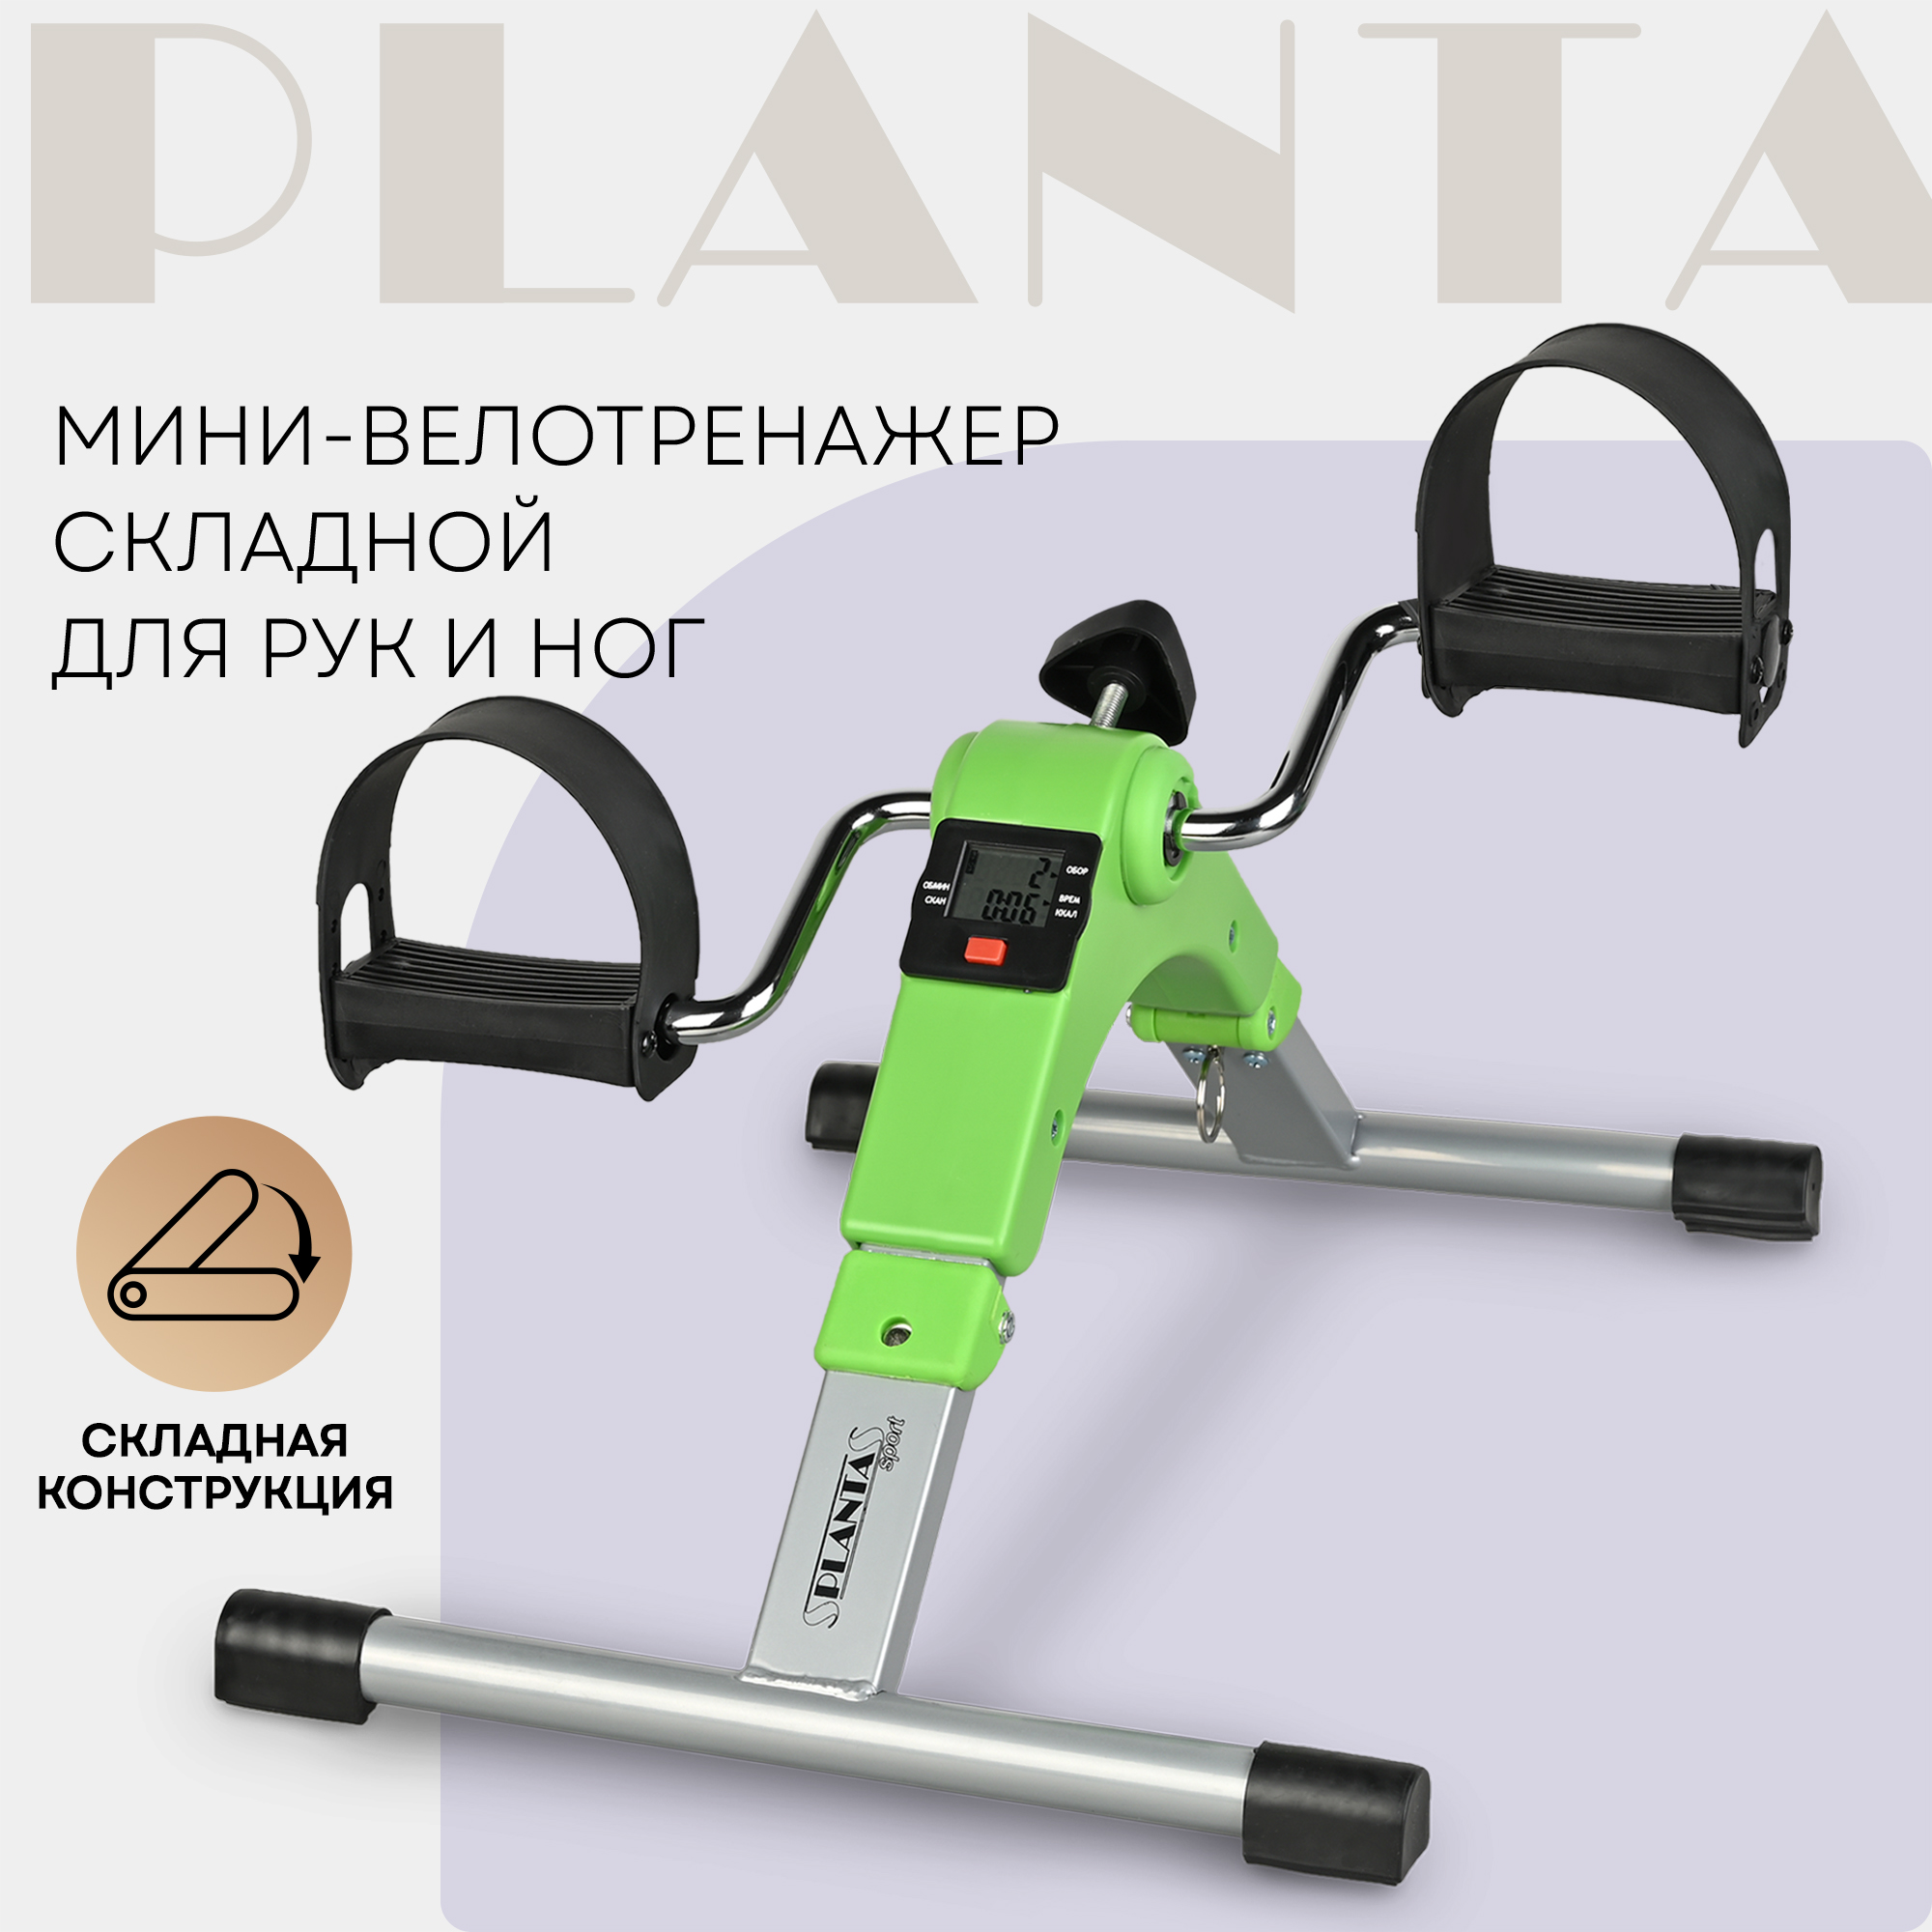 Велотренажер Planta FD-BIKE-001